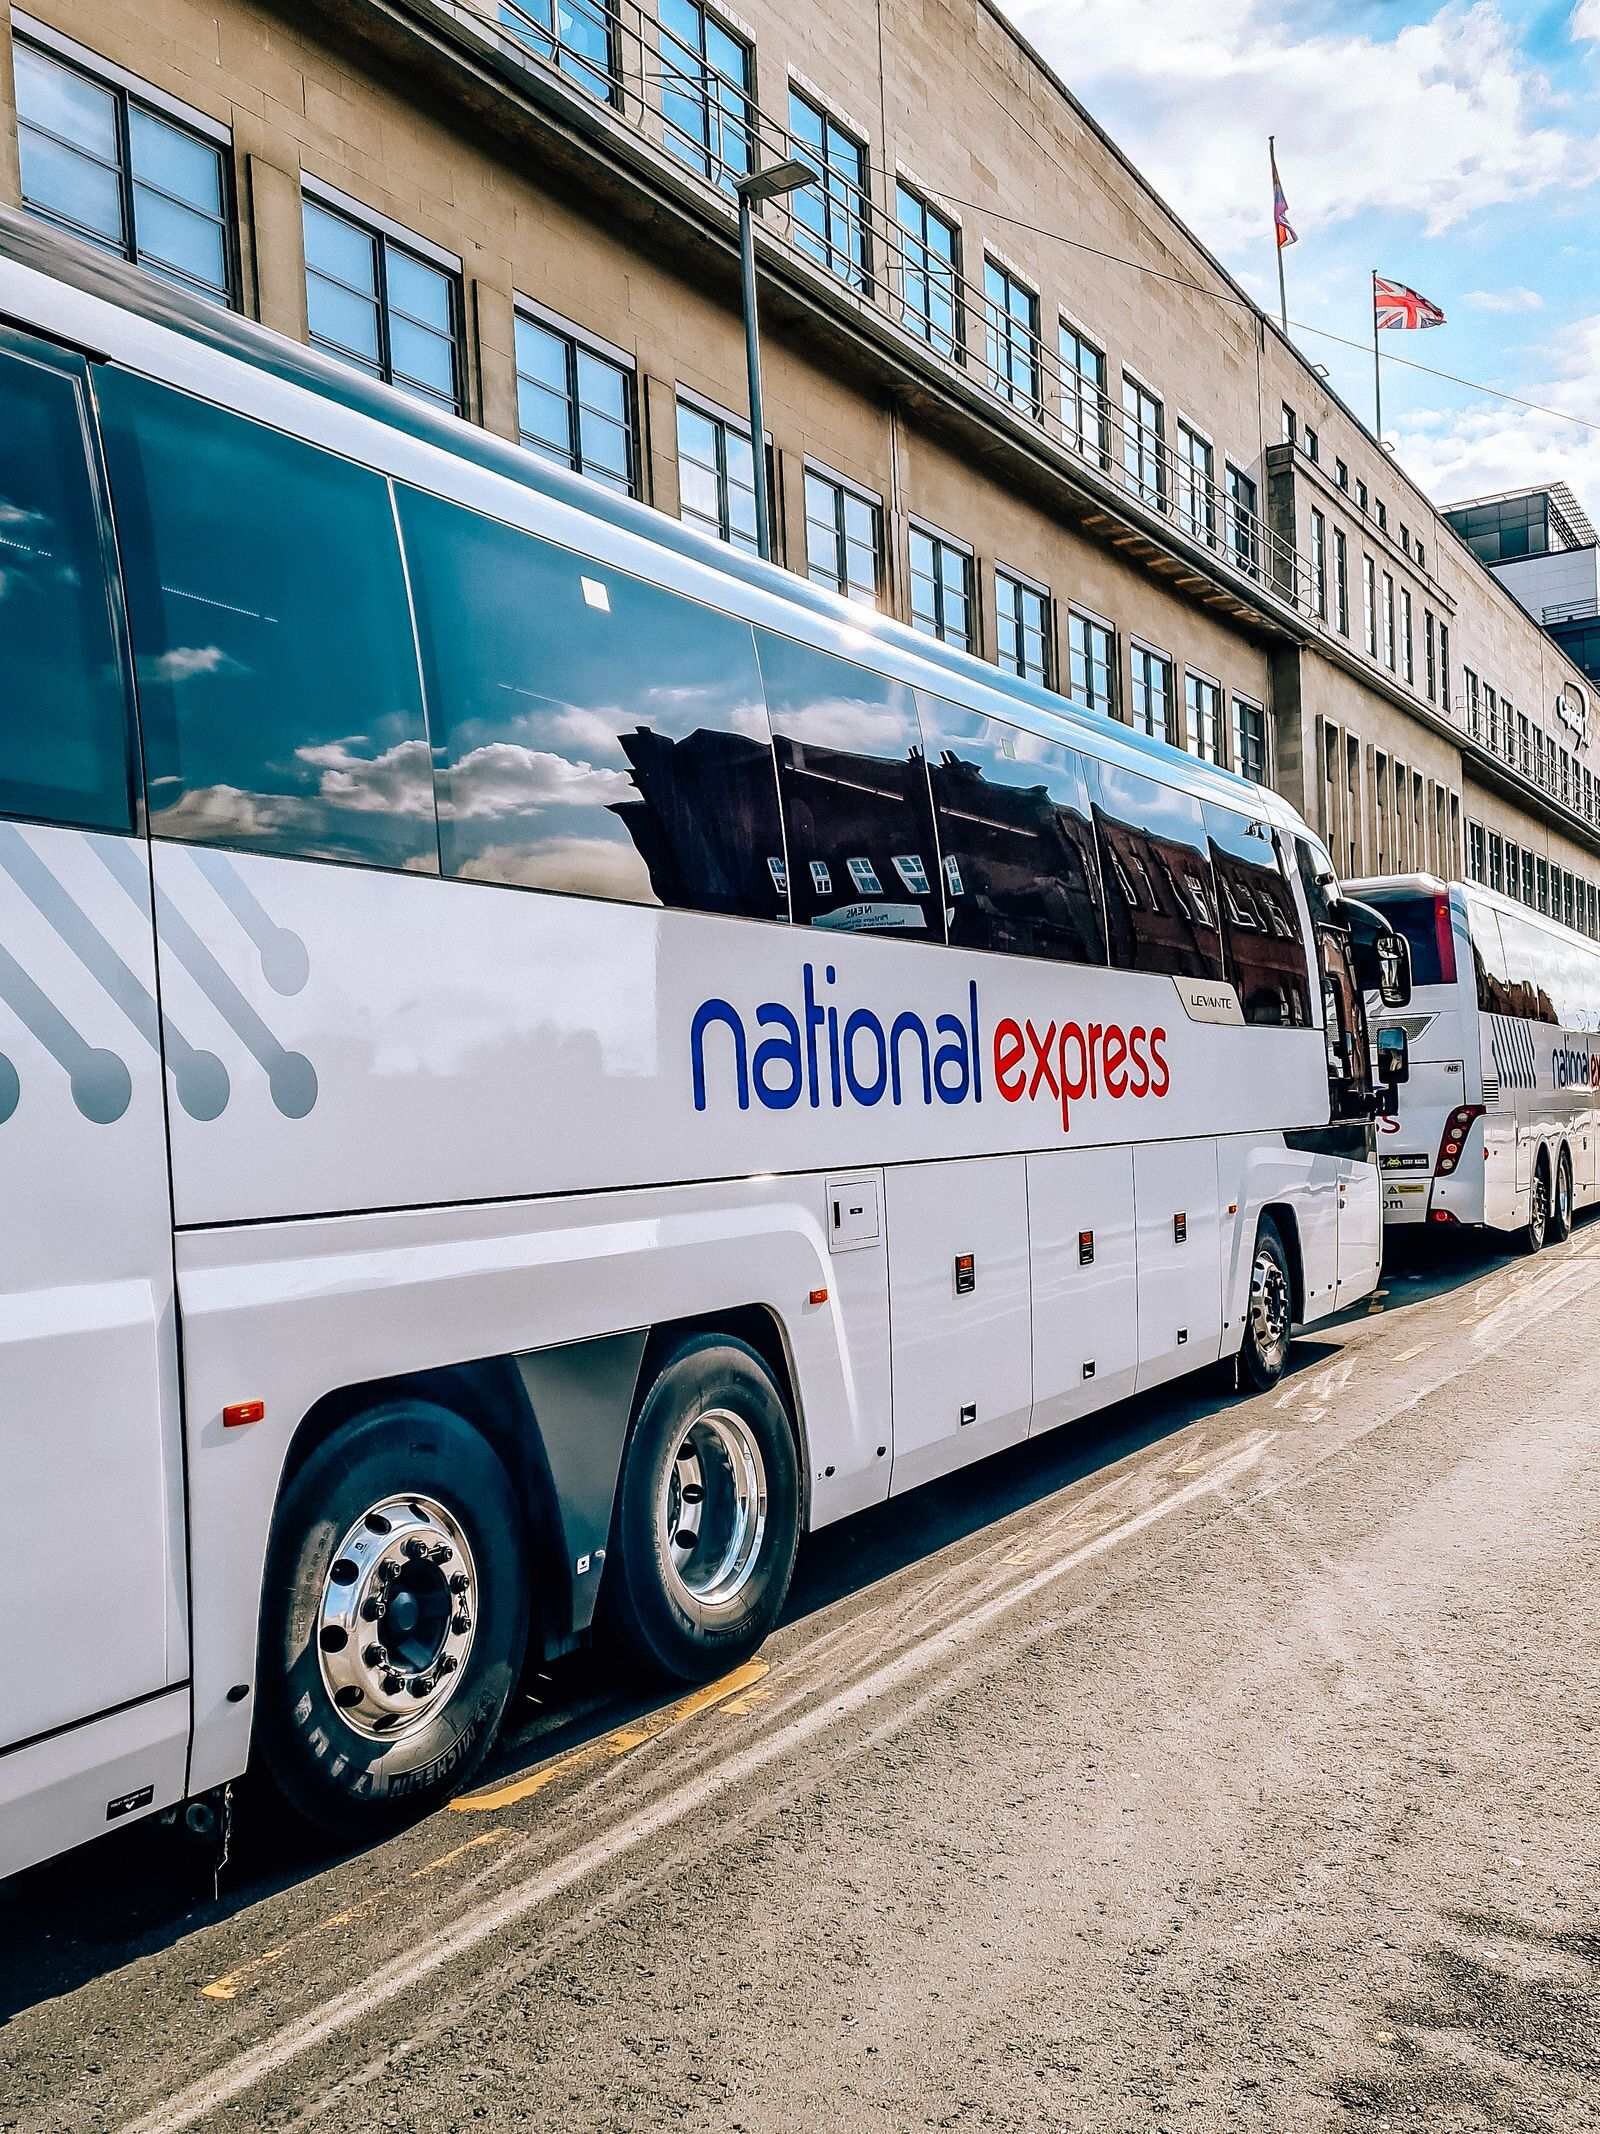 national express coach travel.jpeg